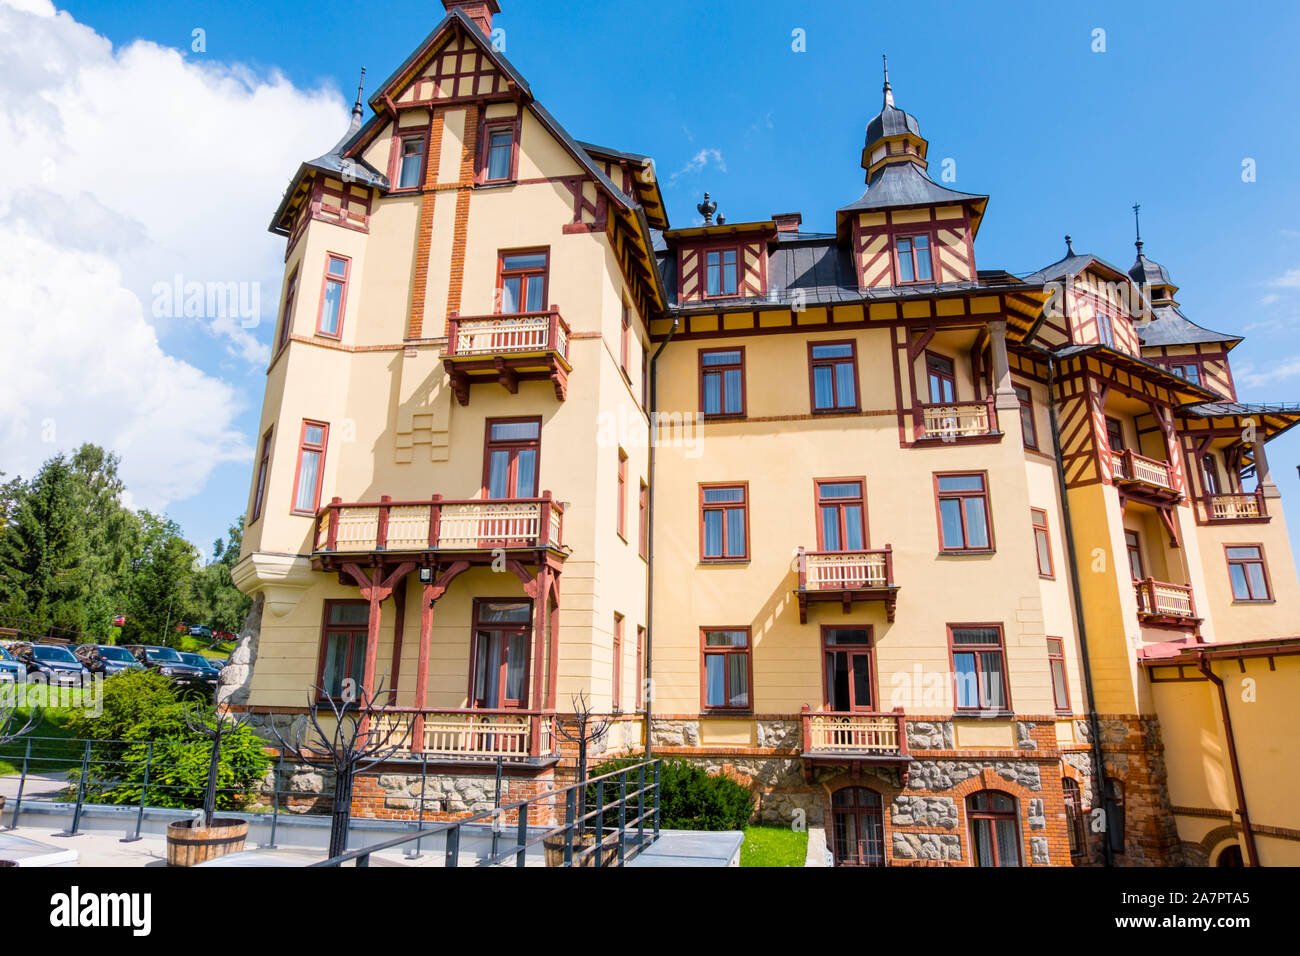 Grand Hotel, Stary Smokovec, Vysoke Tatry, Slovakia Stock Photo